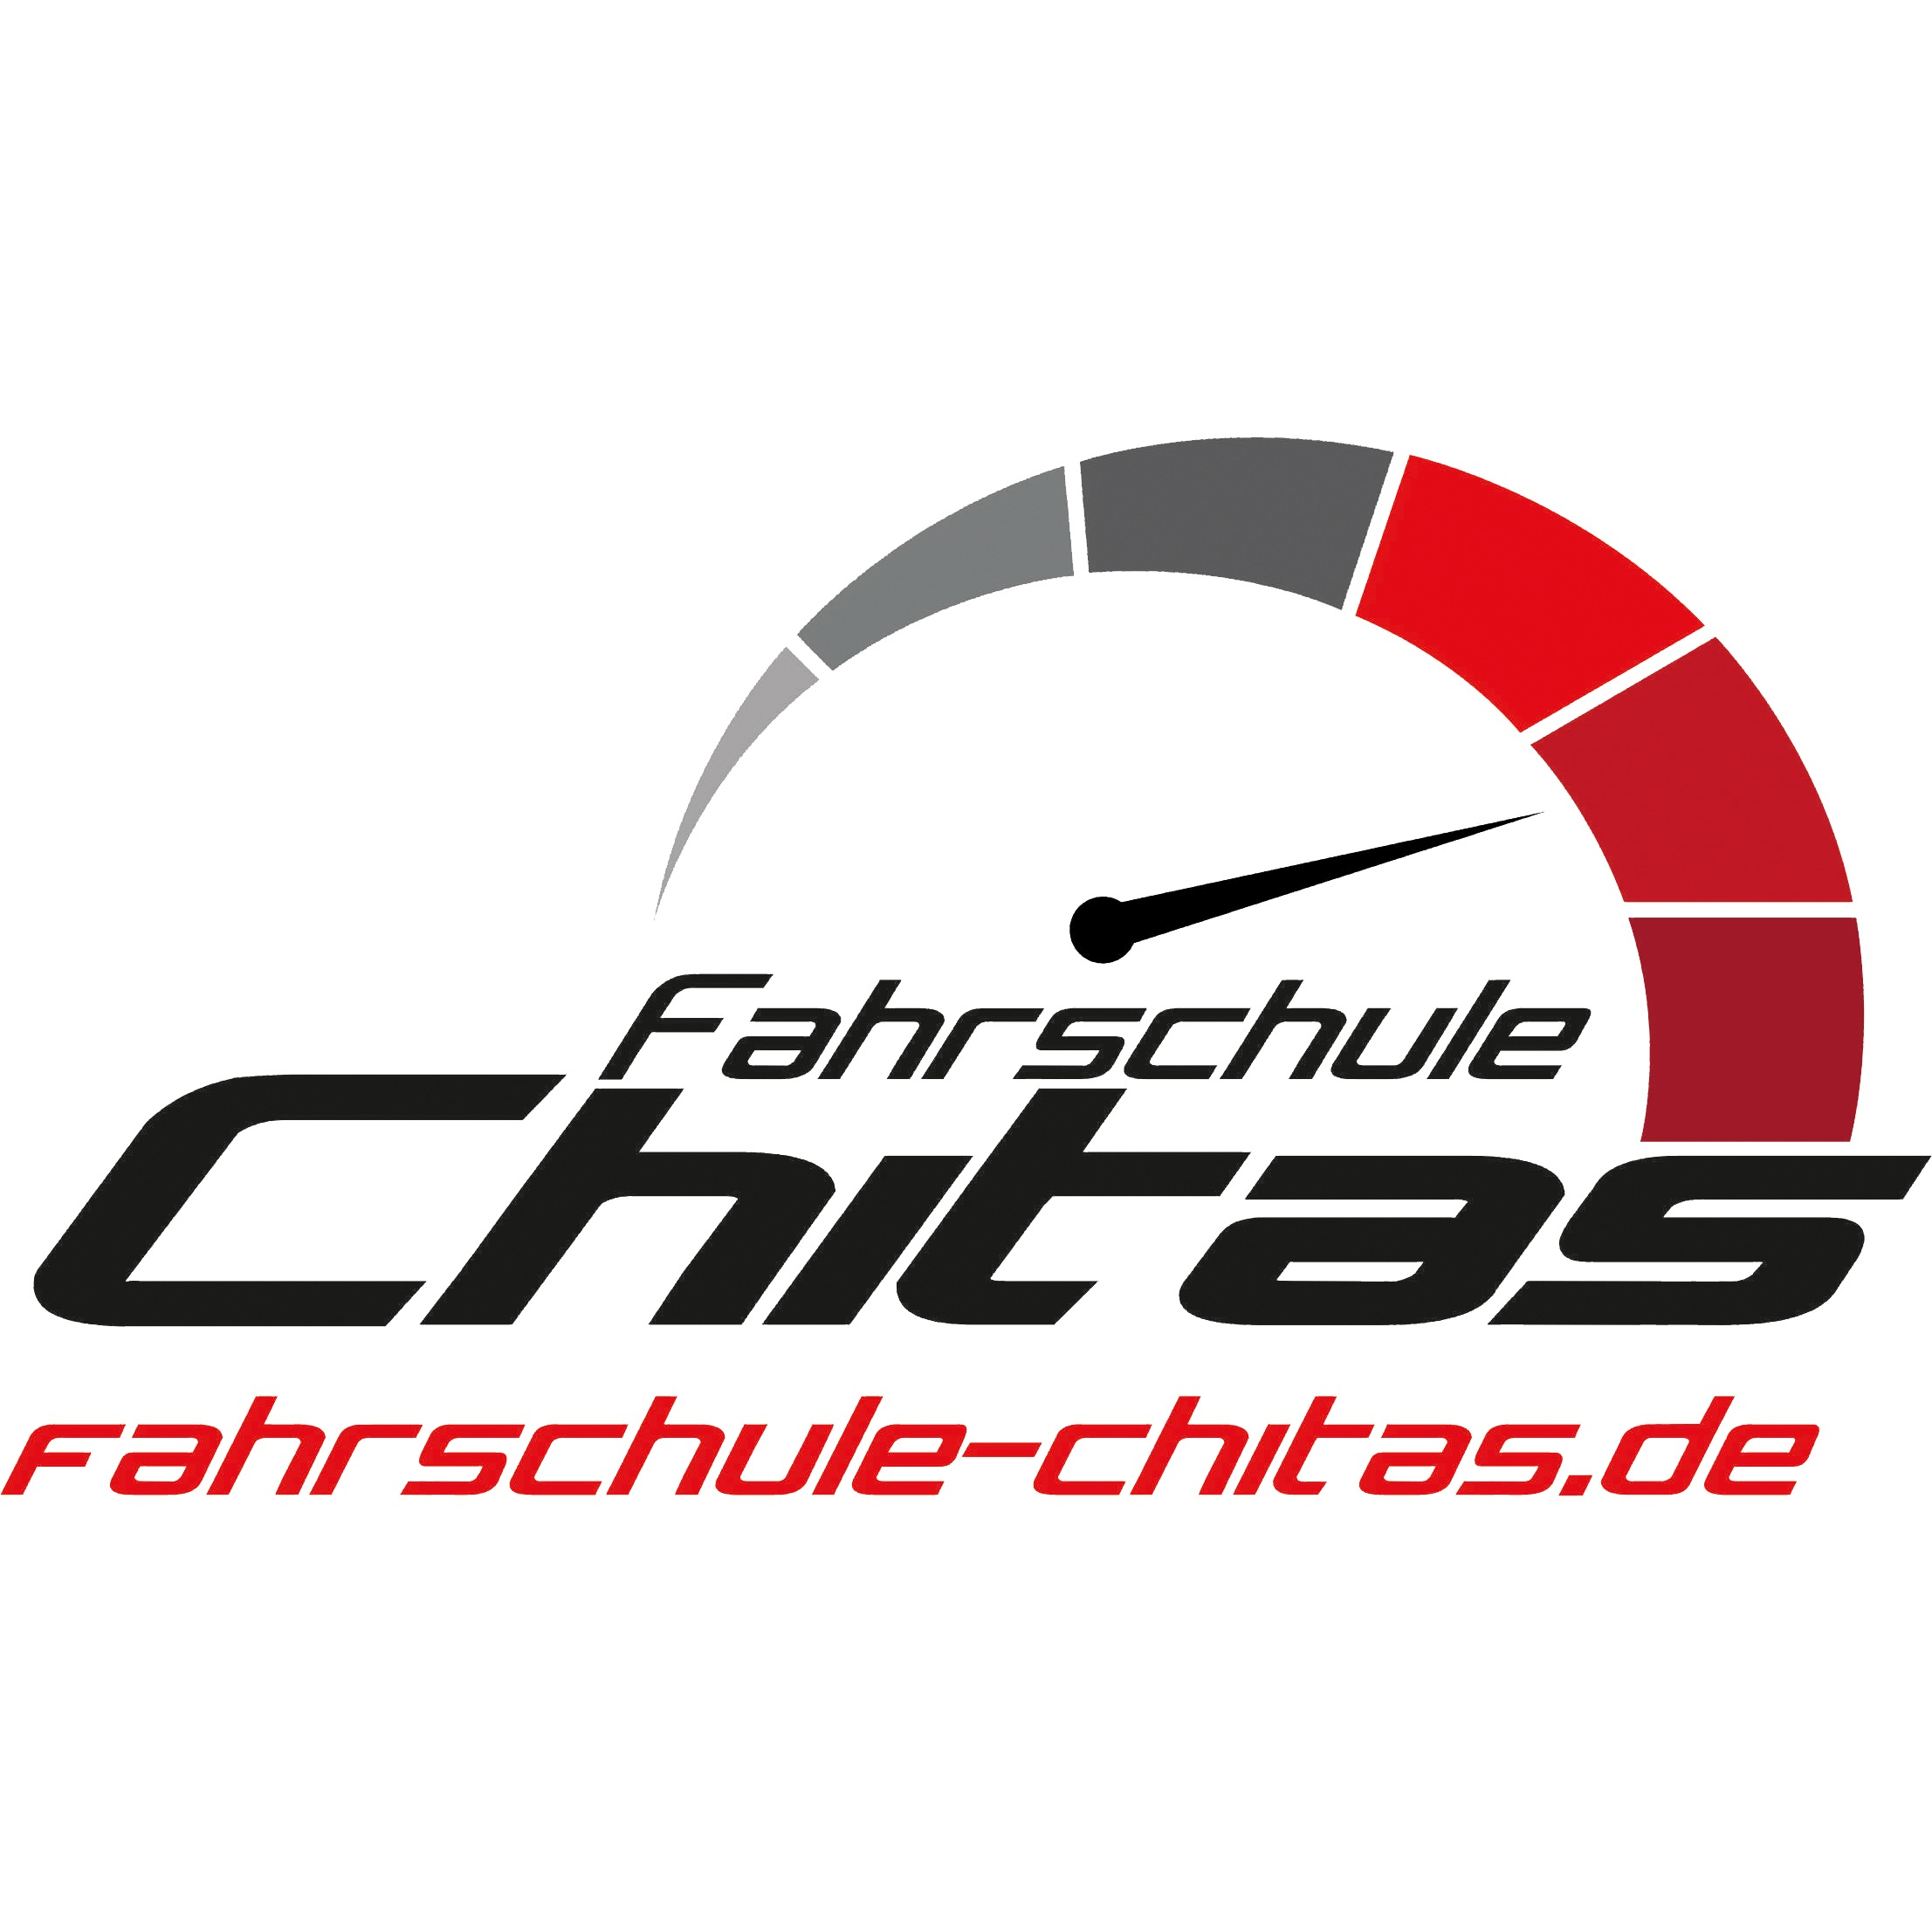 Logo Fahrschule Chitas GmbH in Hannover – Ihr verlässlicher Partner für umfassende Fahrausbildung. Bereiten Sie sich mit unseren professionellen Fahrlehrern, modernen Fahrzeugen und aktuellen Lehrmethoden auf das Autofahren vor.